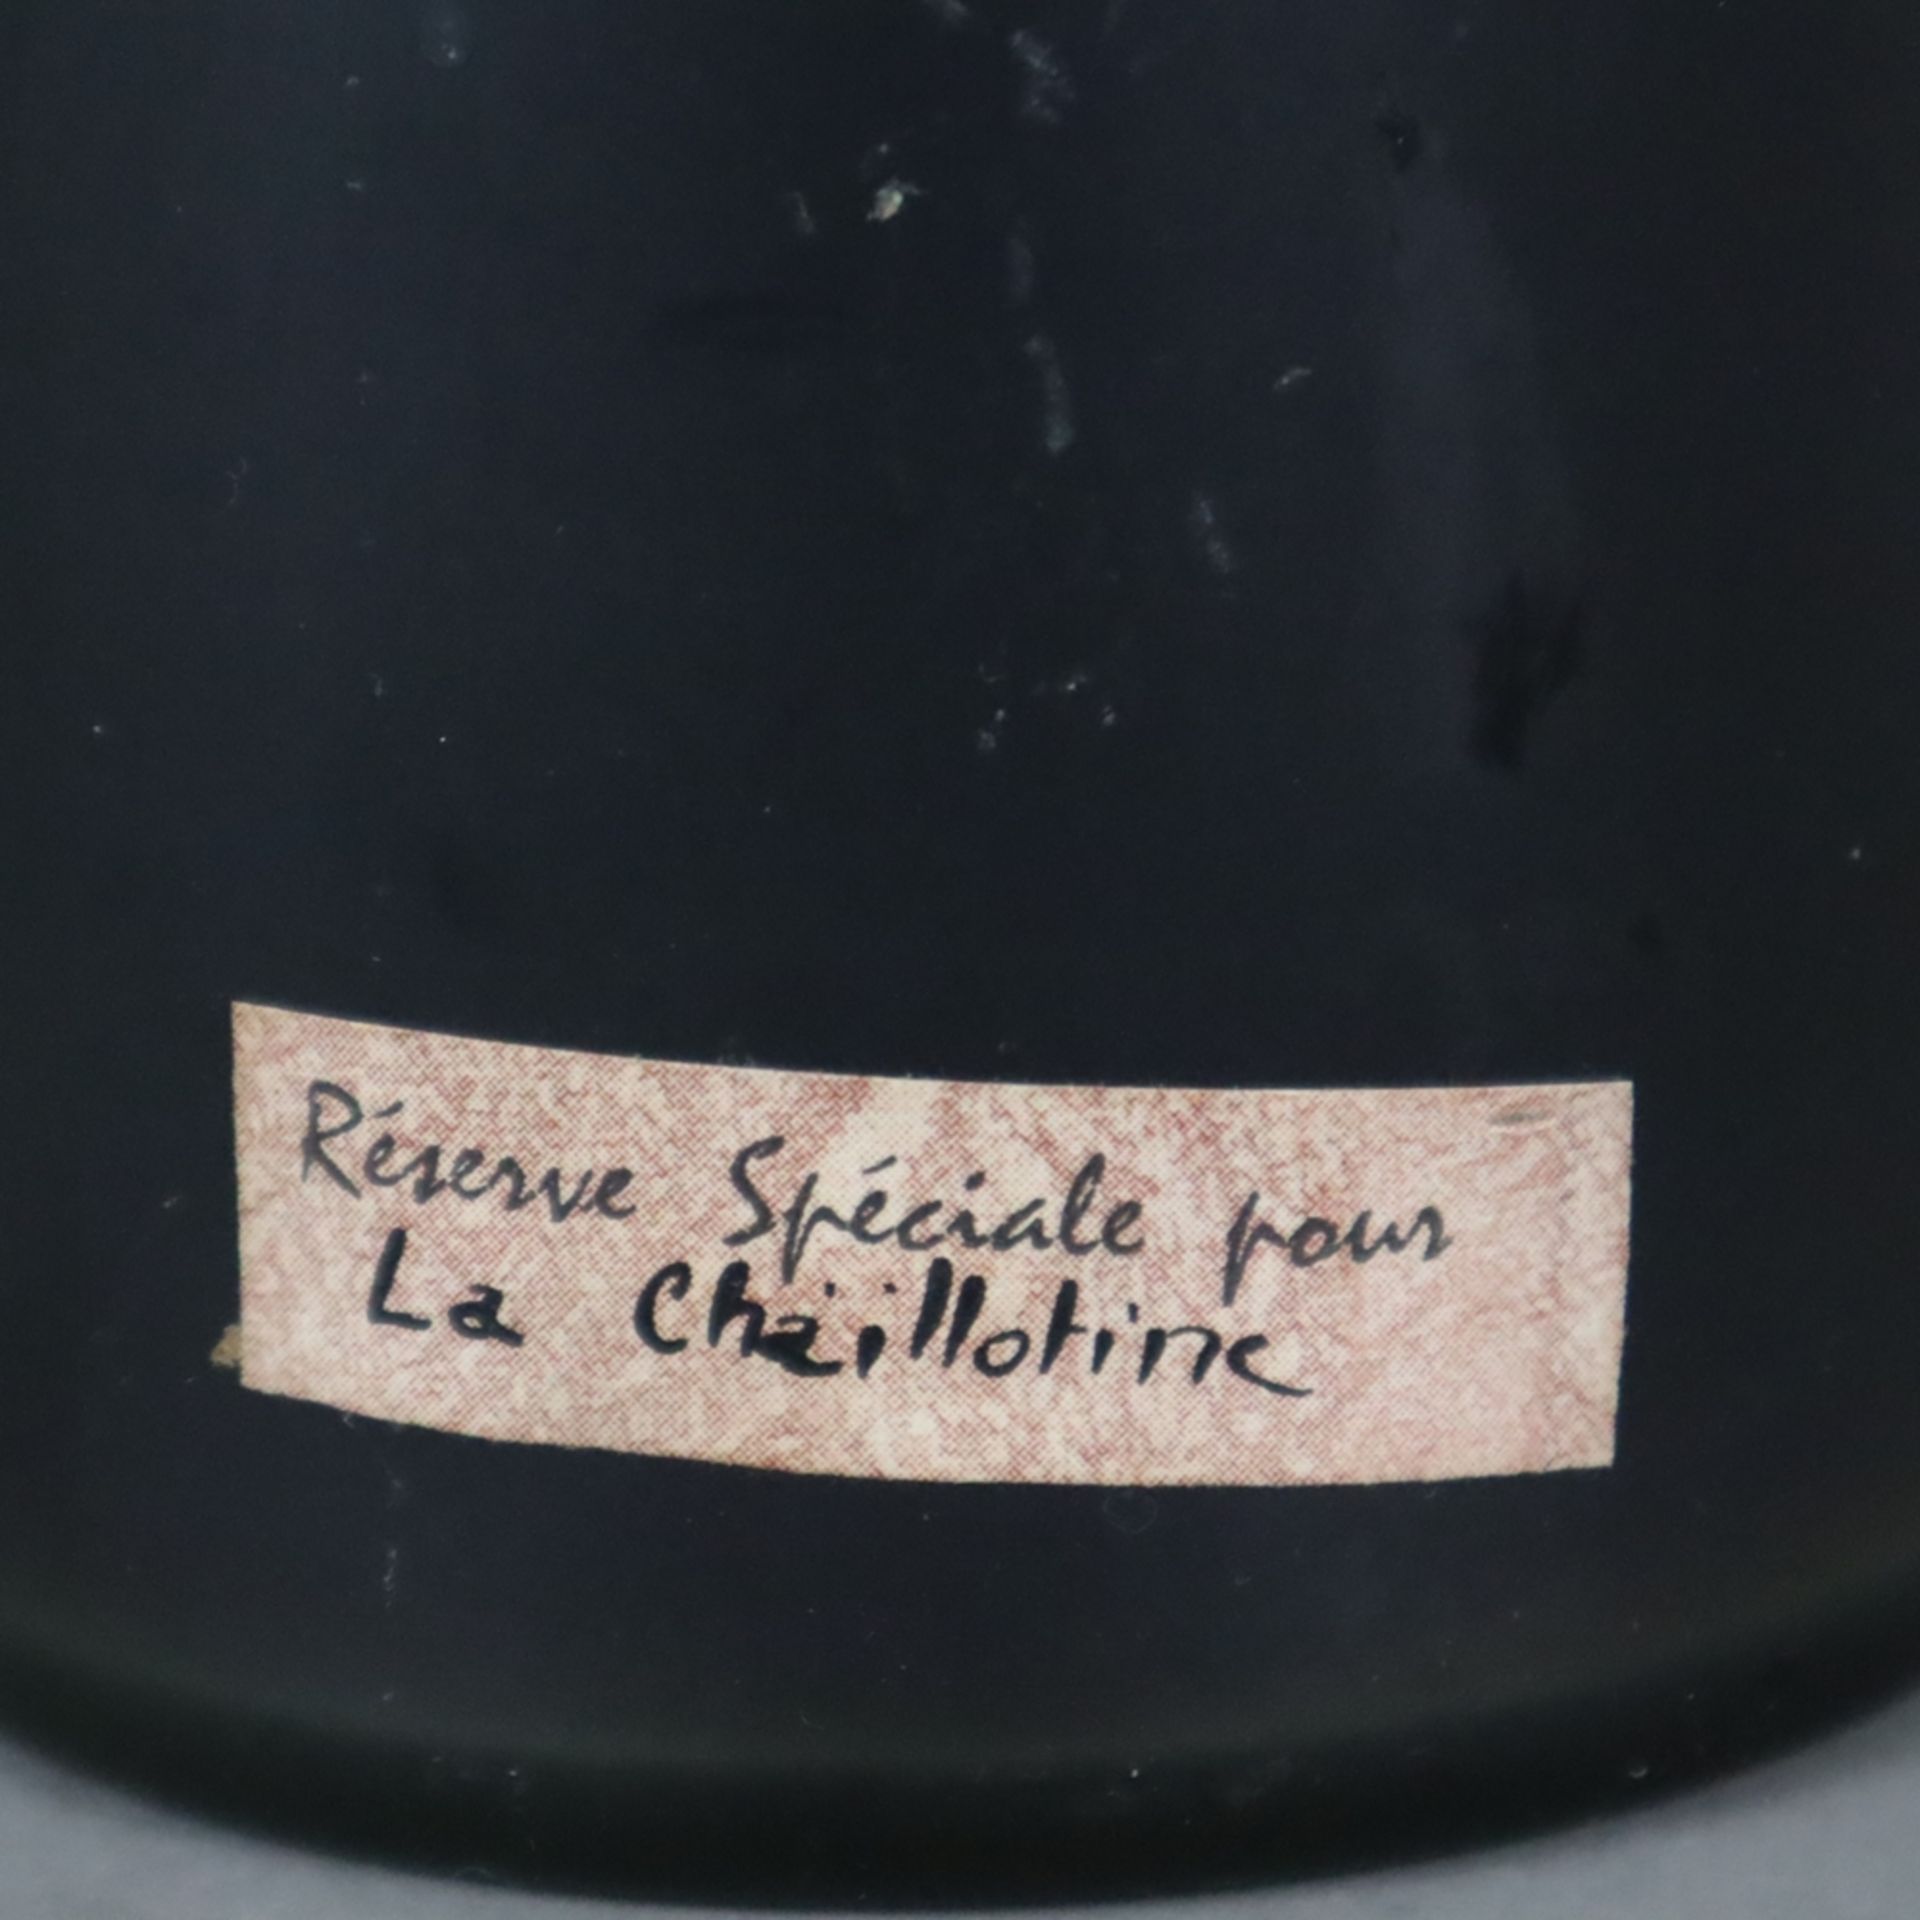 Armagnac - Vieil Sempé, Réserve Spéciale pour La Chaillotine, 40% Vol., 0,7 Liter - Image 4 of 4